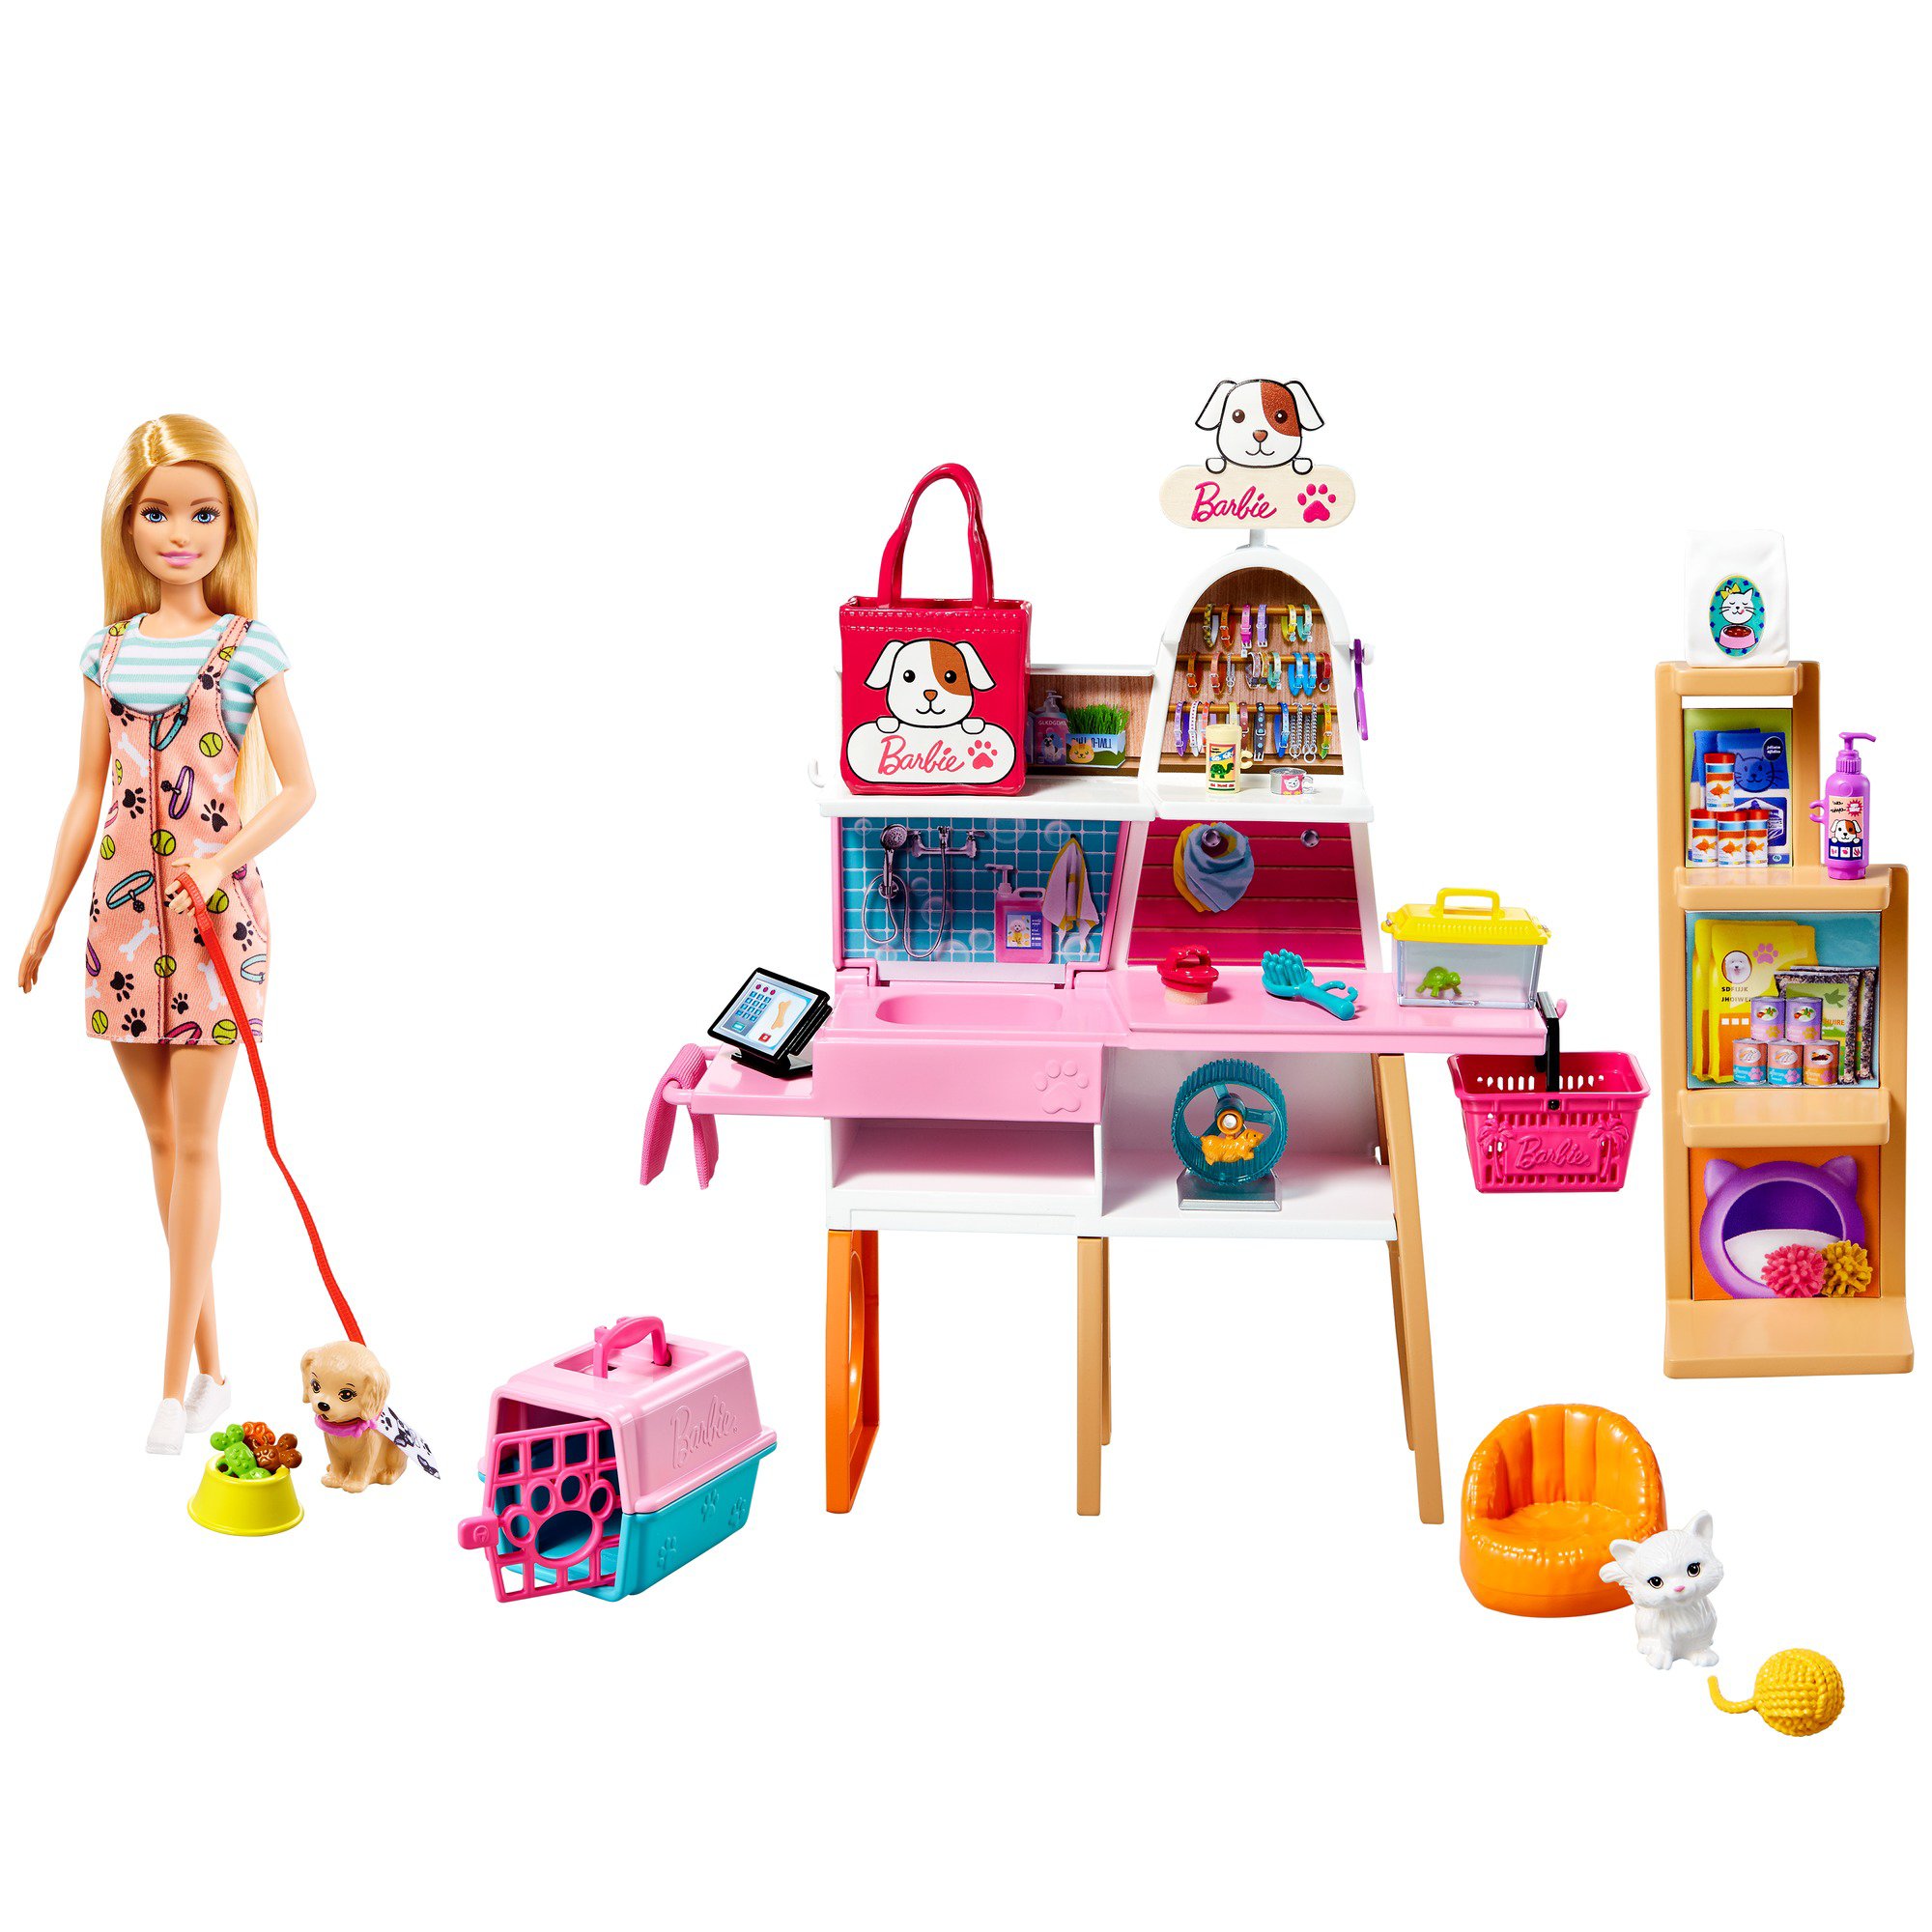 Barbie Pet Boutique Playset - Shop Playsets at